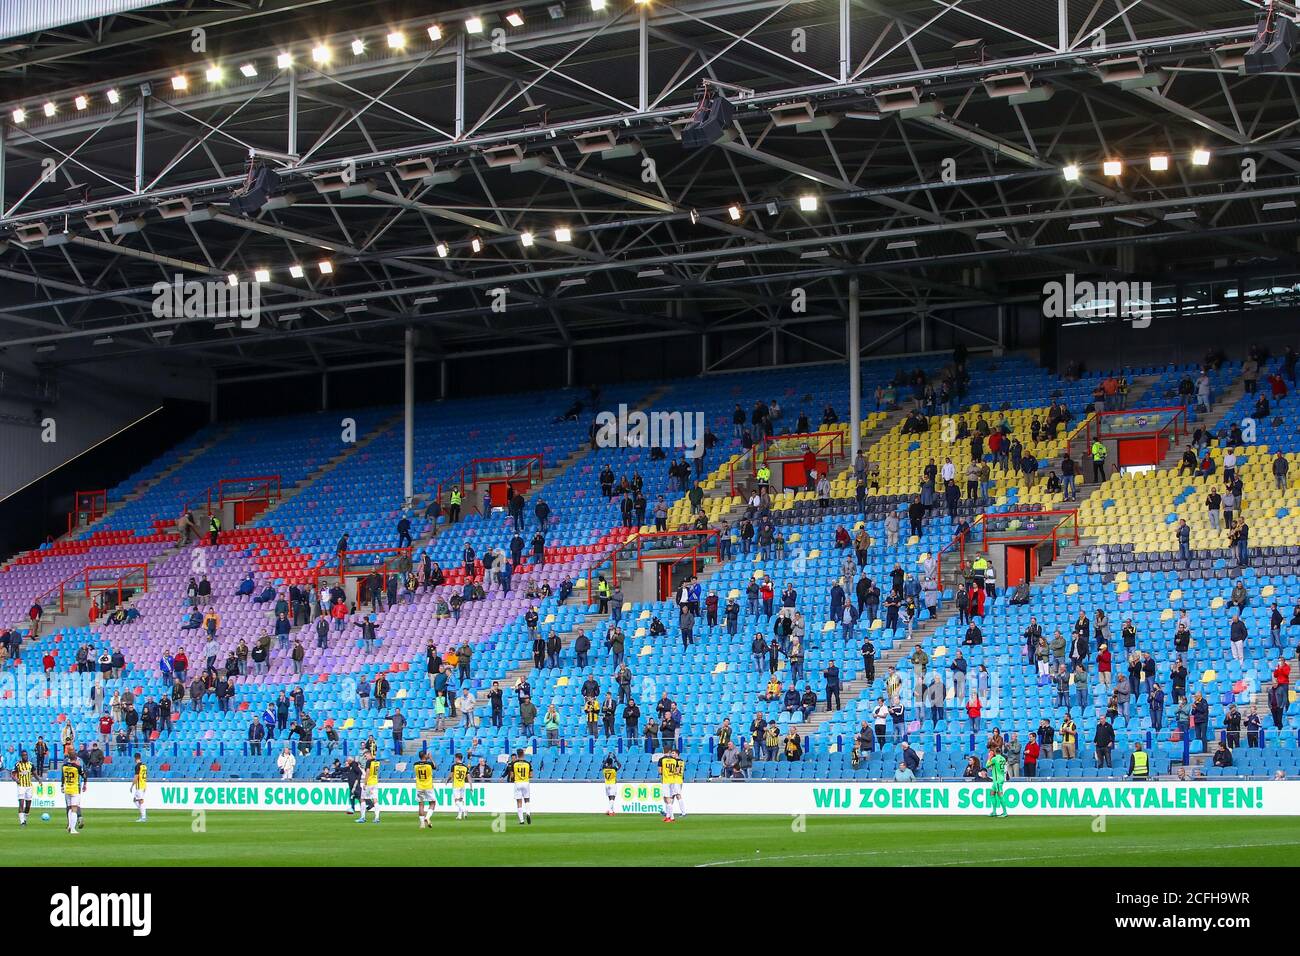 ARNHEM, PAÍSES BAJOS - 5 DE SEPTIEMBRE: Fans de Vitesse con distanciamiento social antes del partido amistoso entre Vitesse y SV Darmstadt 98 el 5 de septiembre de 2020 en Arnhem, países Bajos. *** Título local *** Foto de stock